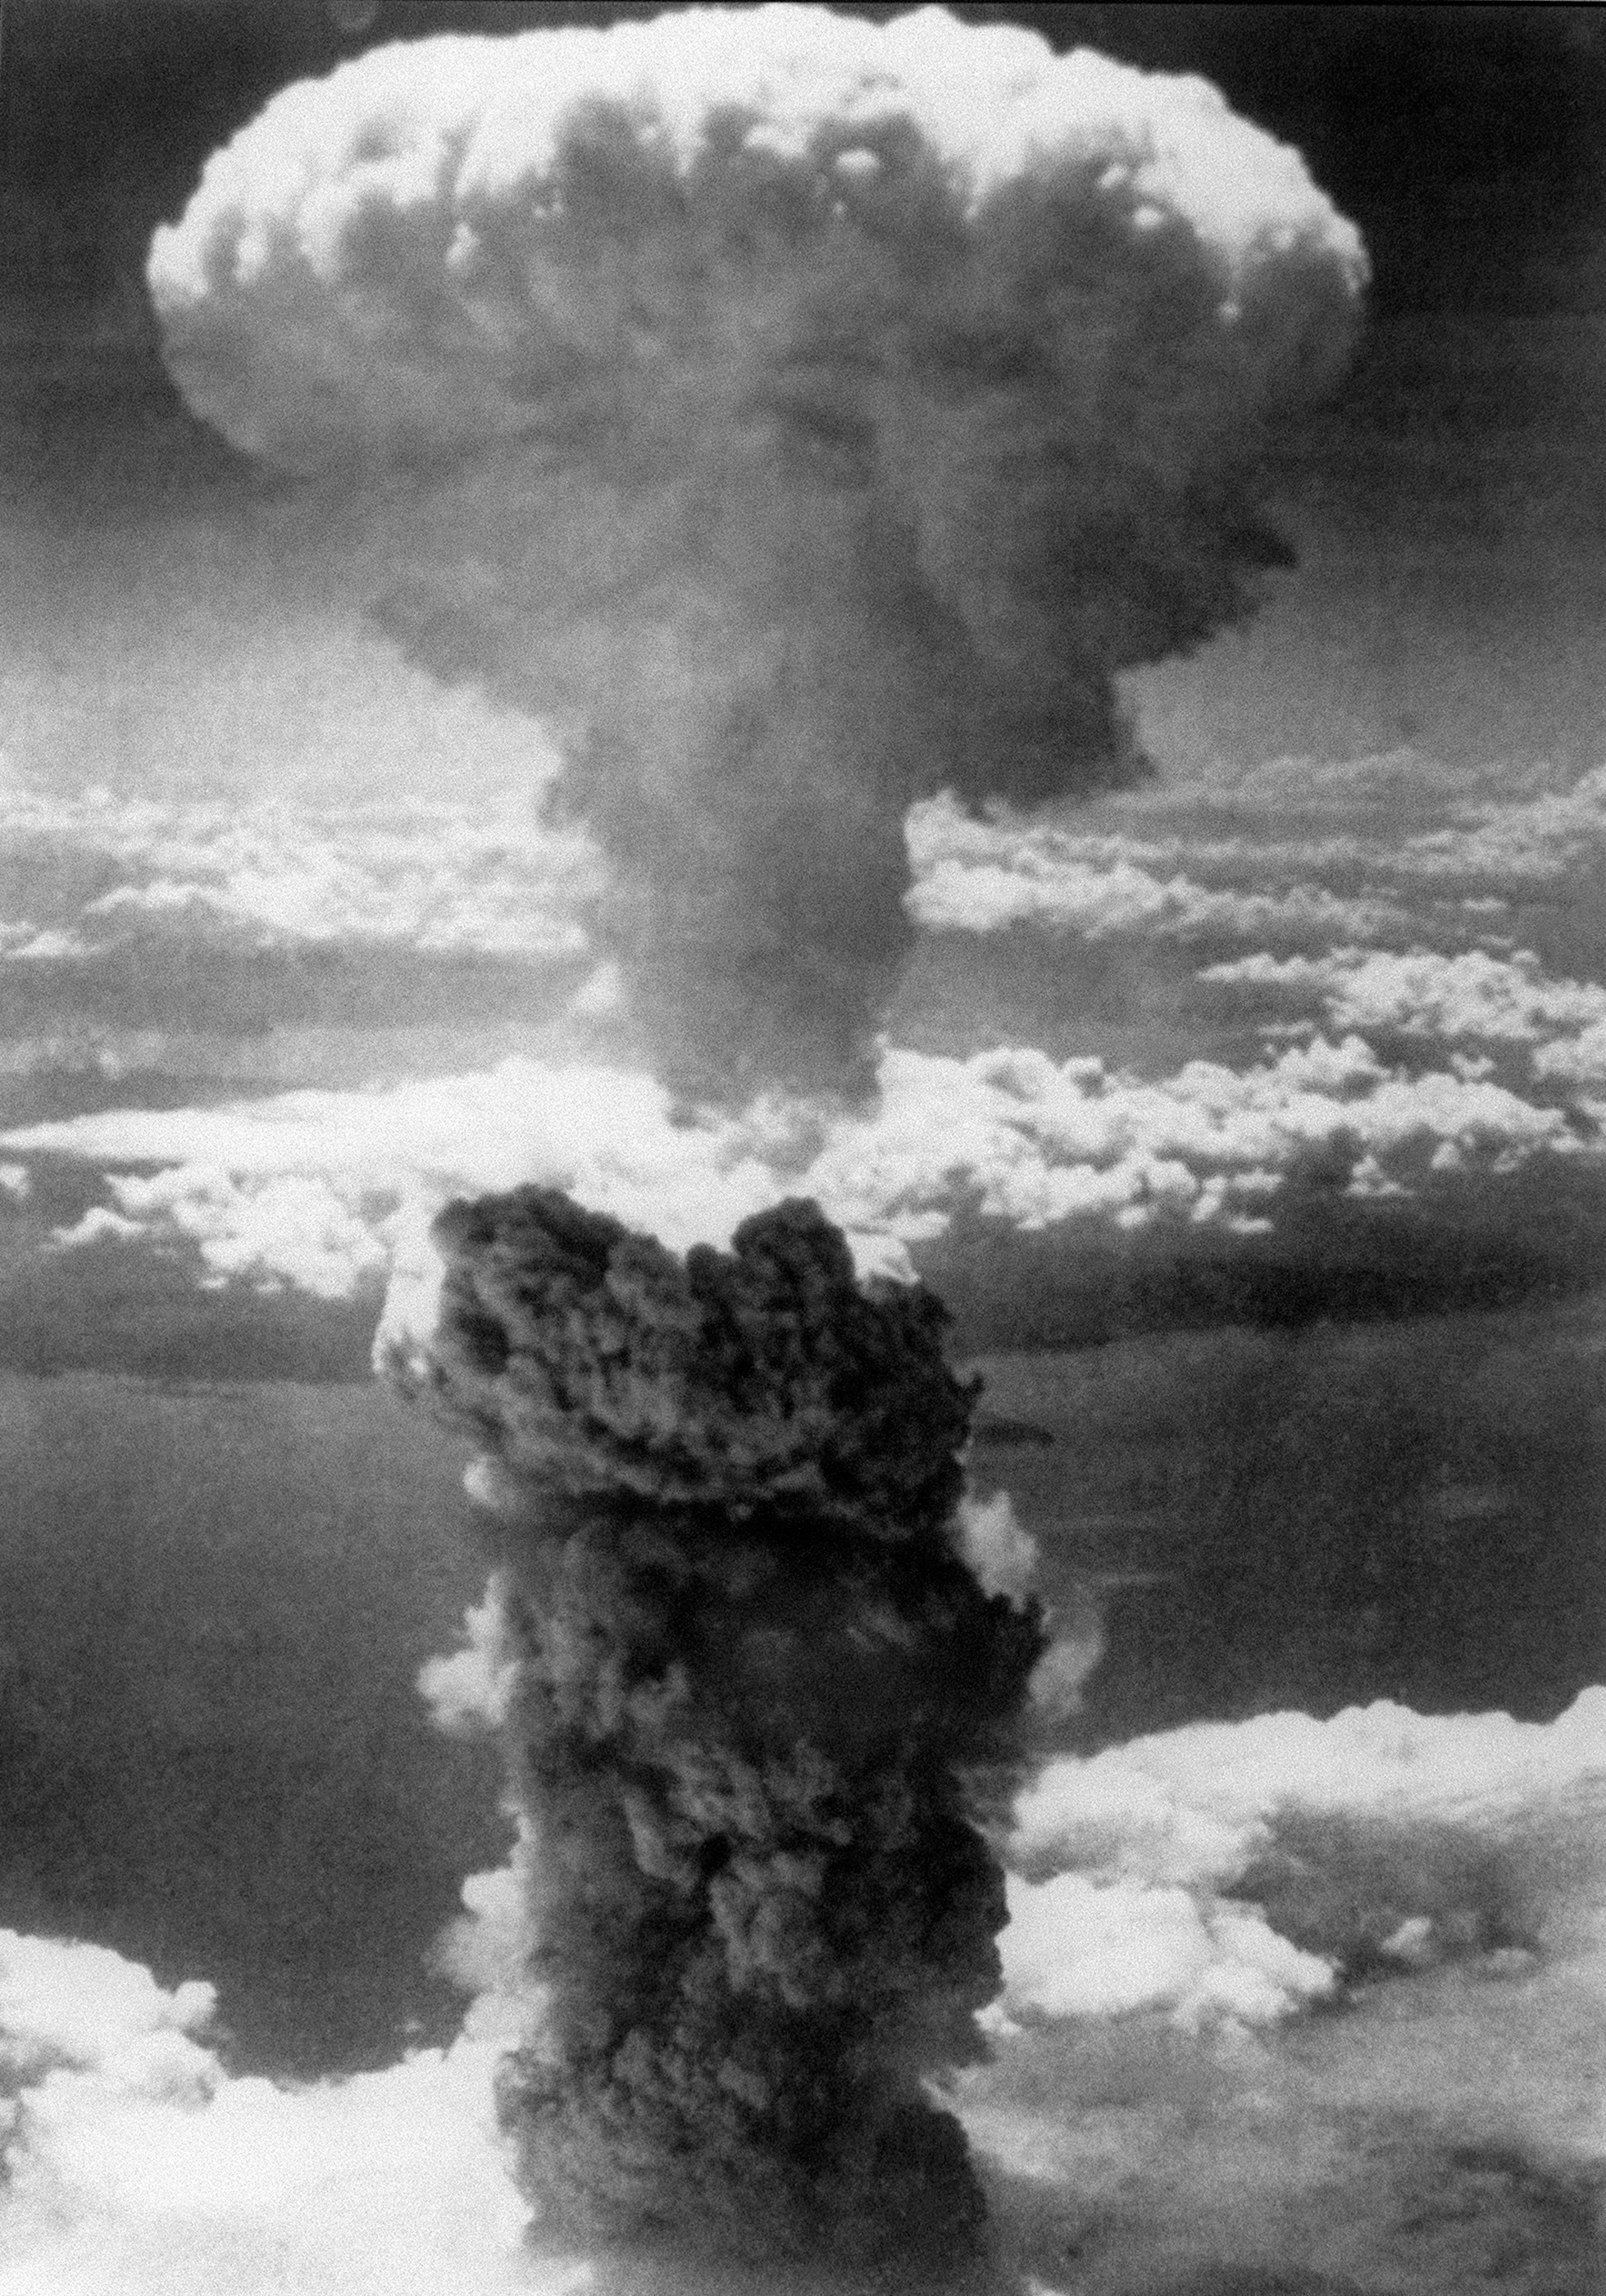 Imagem registrada pela Força Aérea Americana em 9 de agosto de 1945. Bomba atômica em Nagasaki